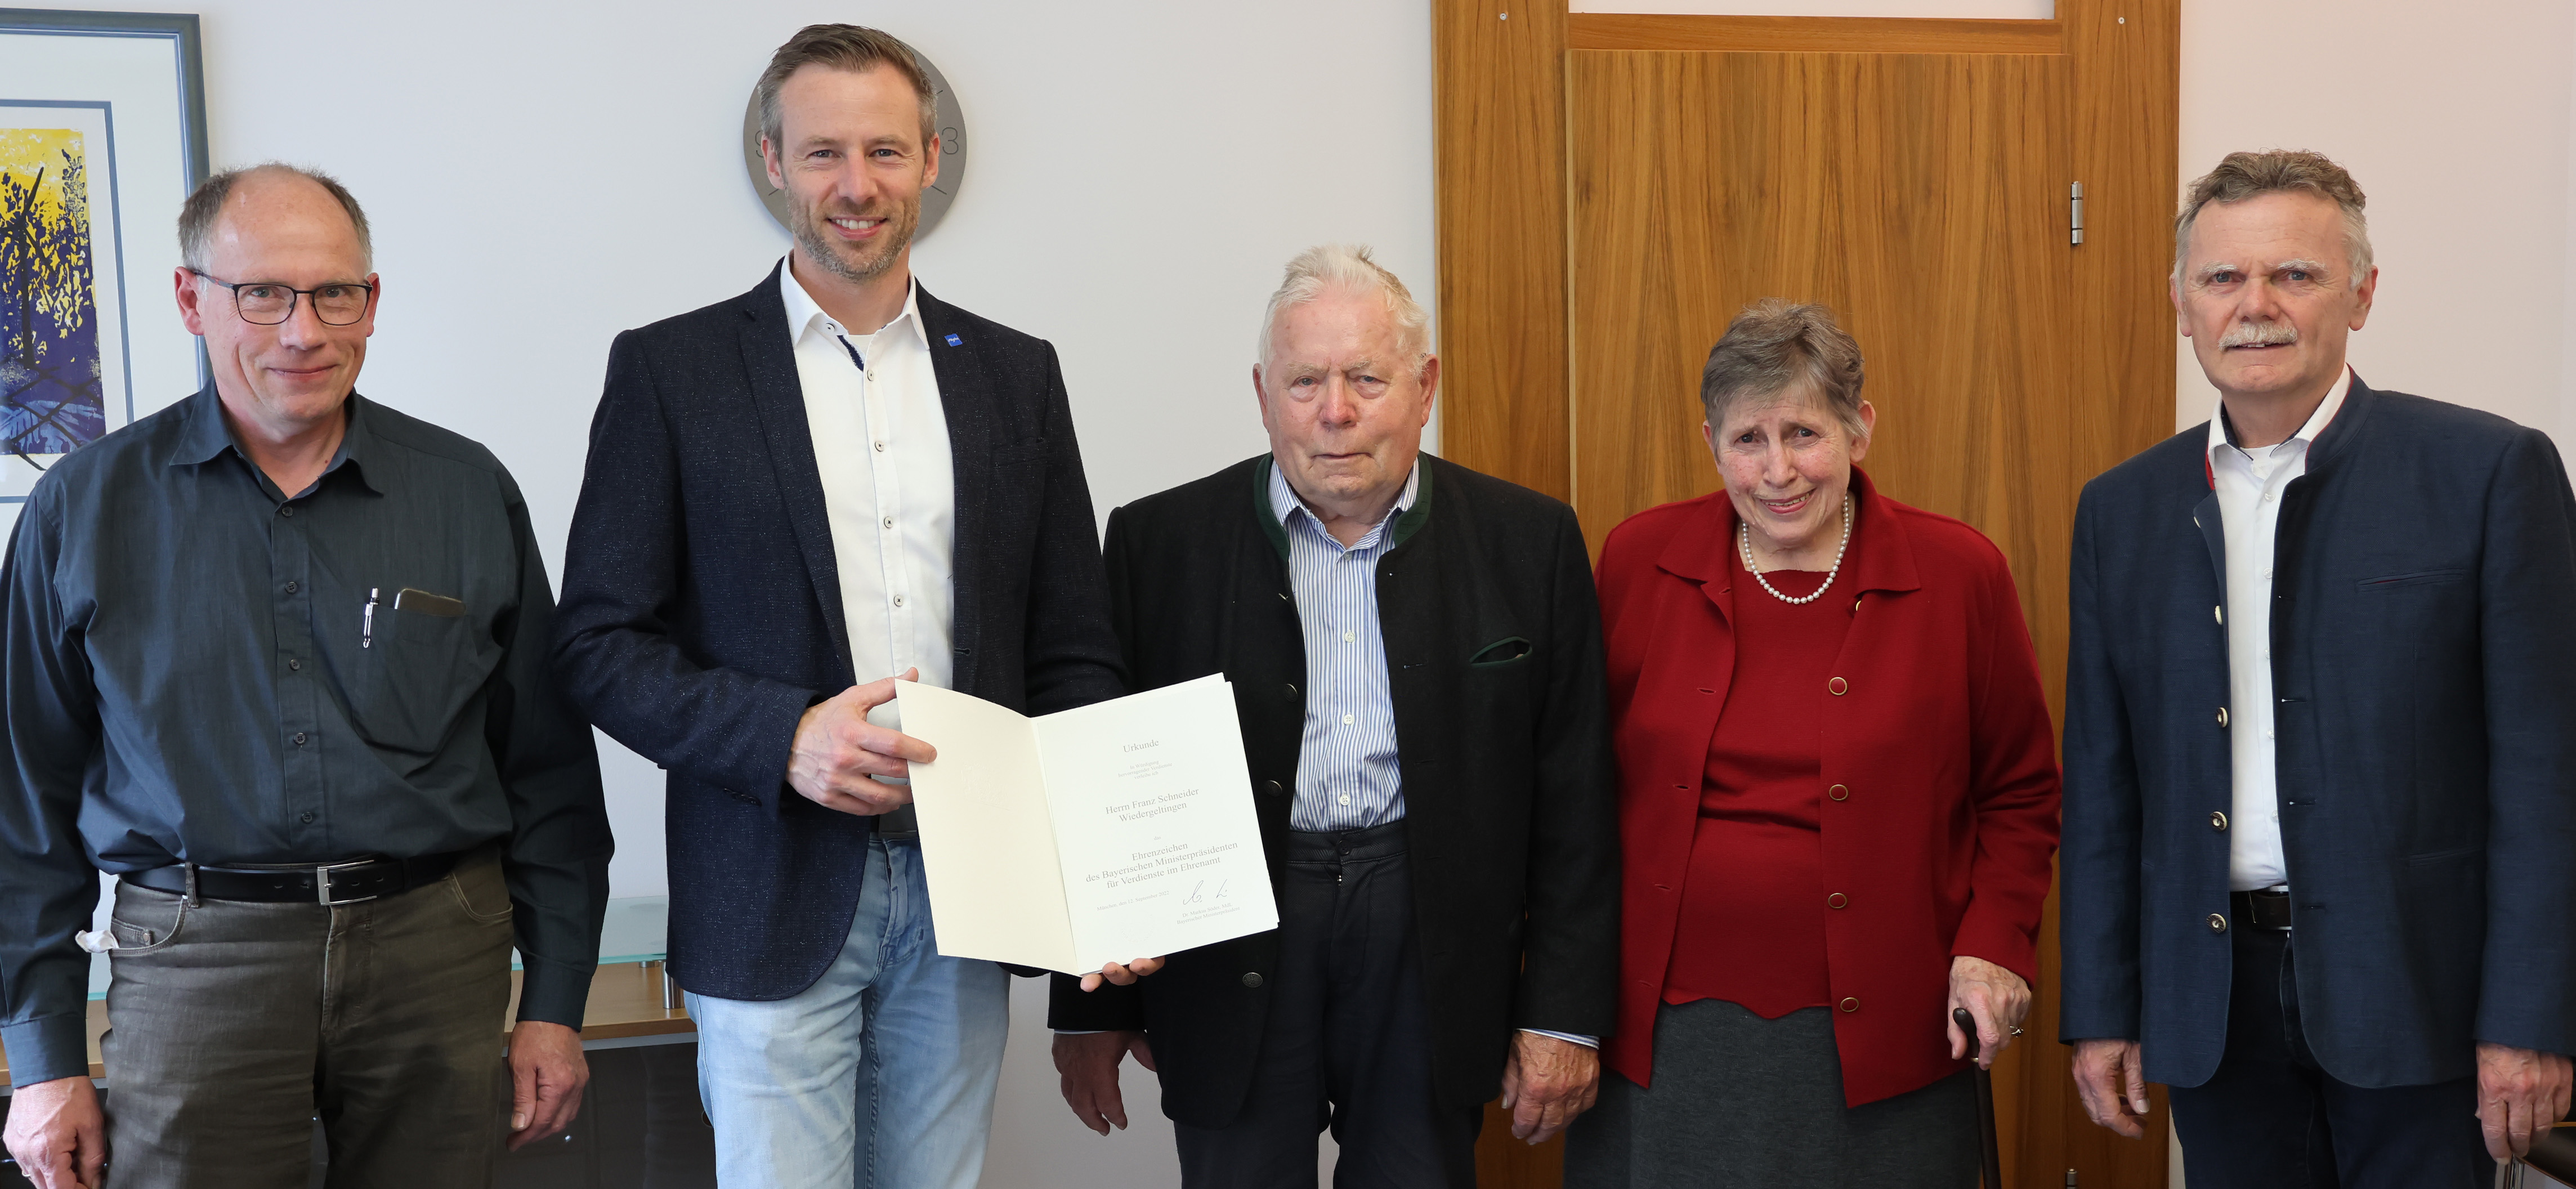 Landrat Alex Eder und der Geehrte Franz Schneider halten eine Urkunde in die Kamera, neben ihnen steht links der Sohn des Geehrten, rechts seine Frau und der Bürgermeister von Wiedergeltingen, Norbert Führer. 